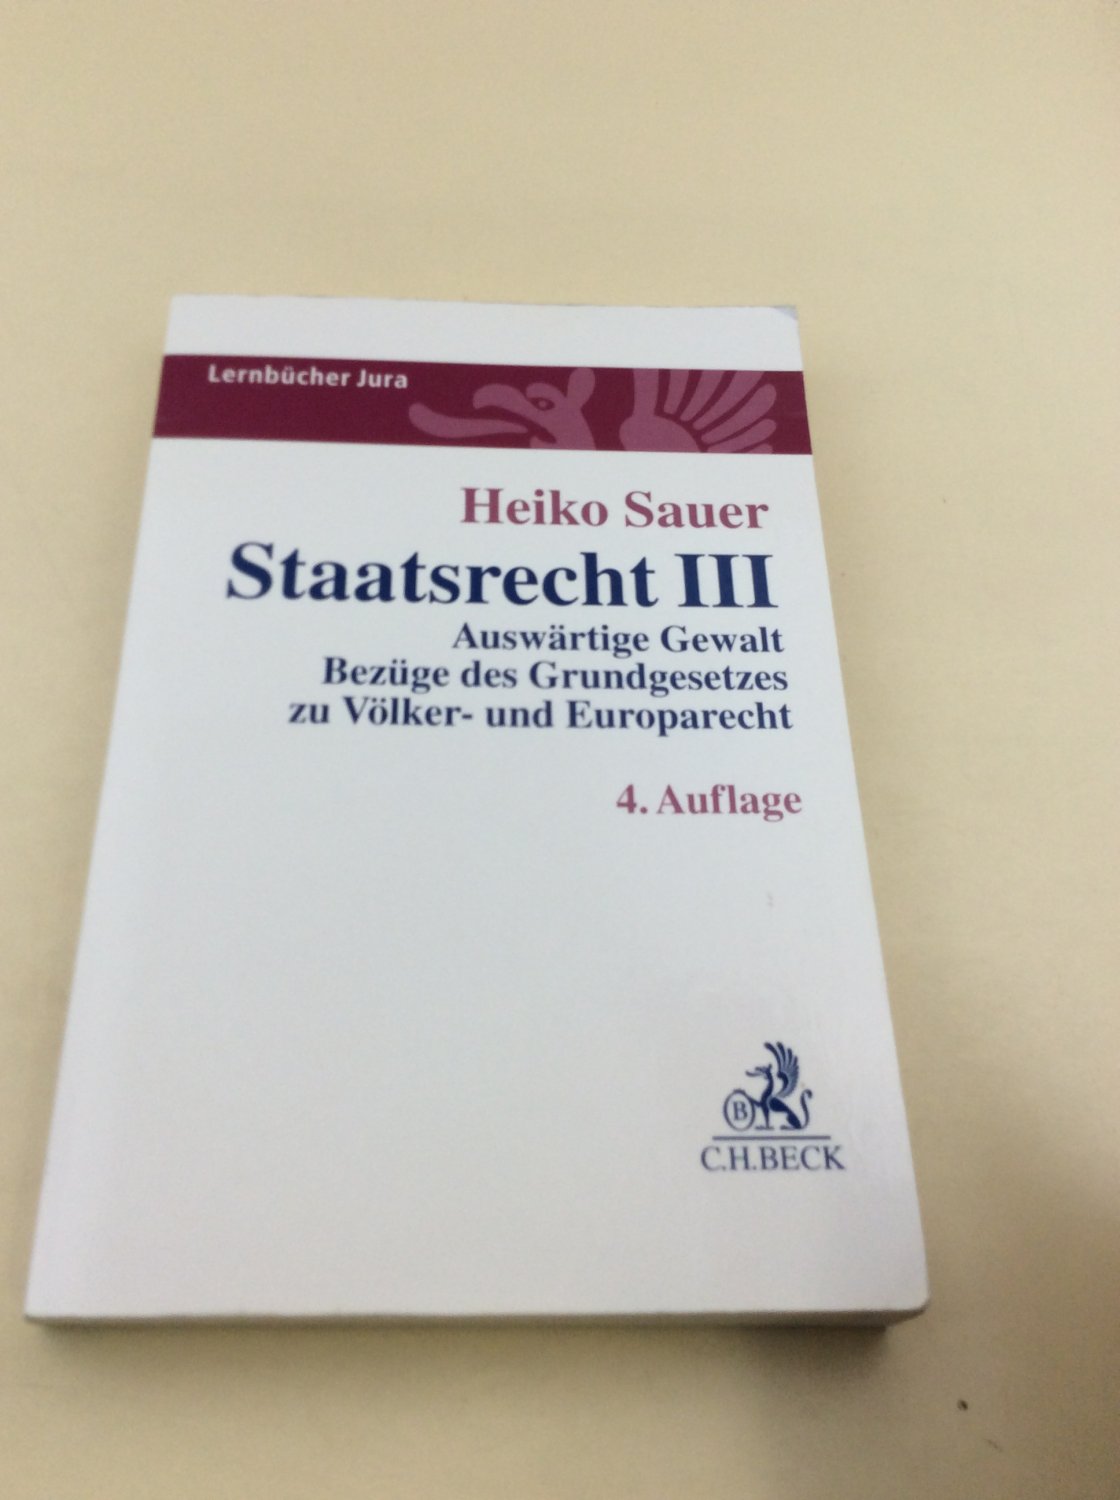 Staatsrecht III: Auswärtige Gewalt, Bezüge des Grundgesetzes zu Völker- und Europarecht (Lernbücher Jura) - Sauer, Heiko